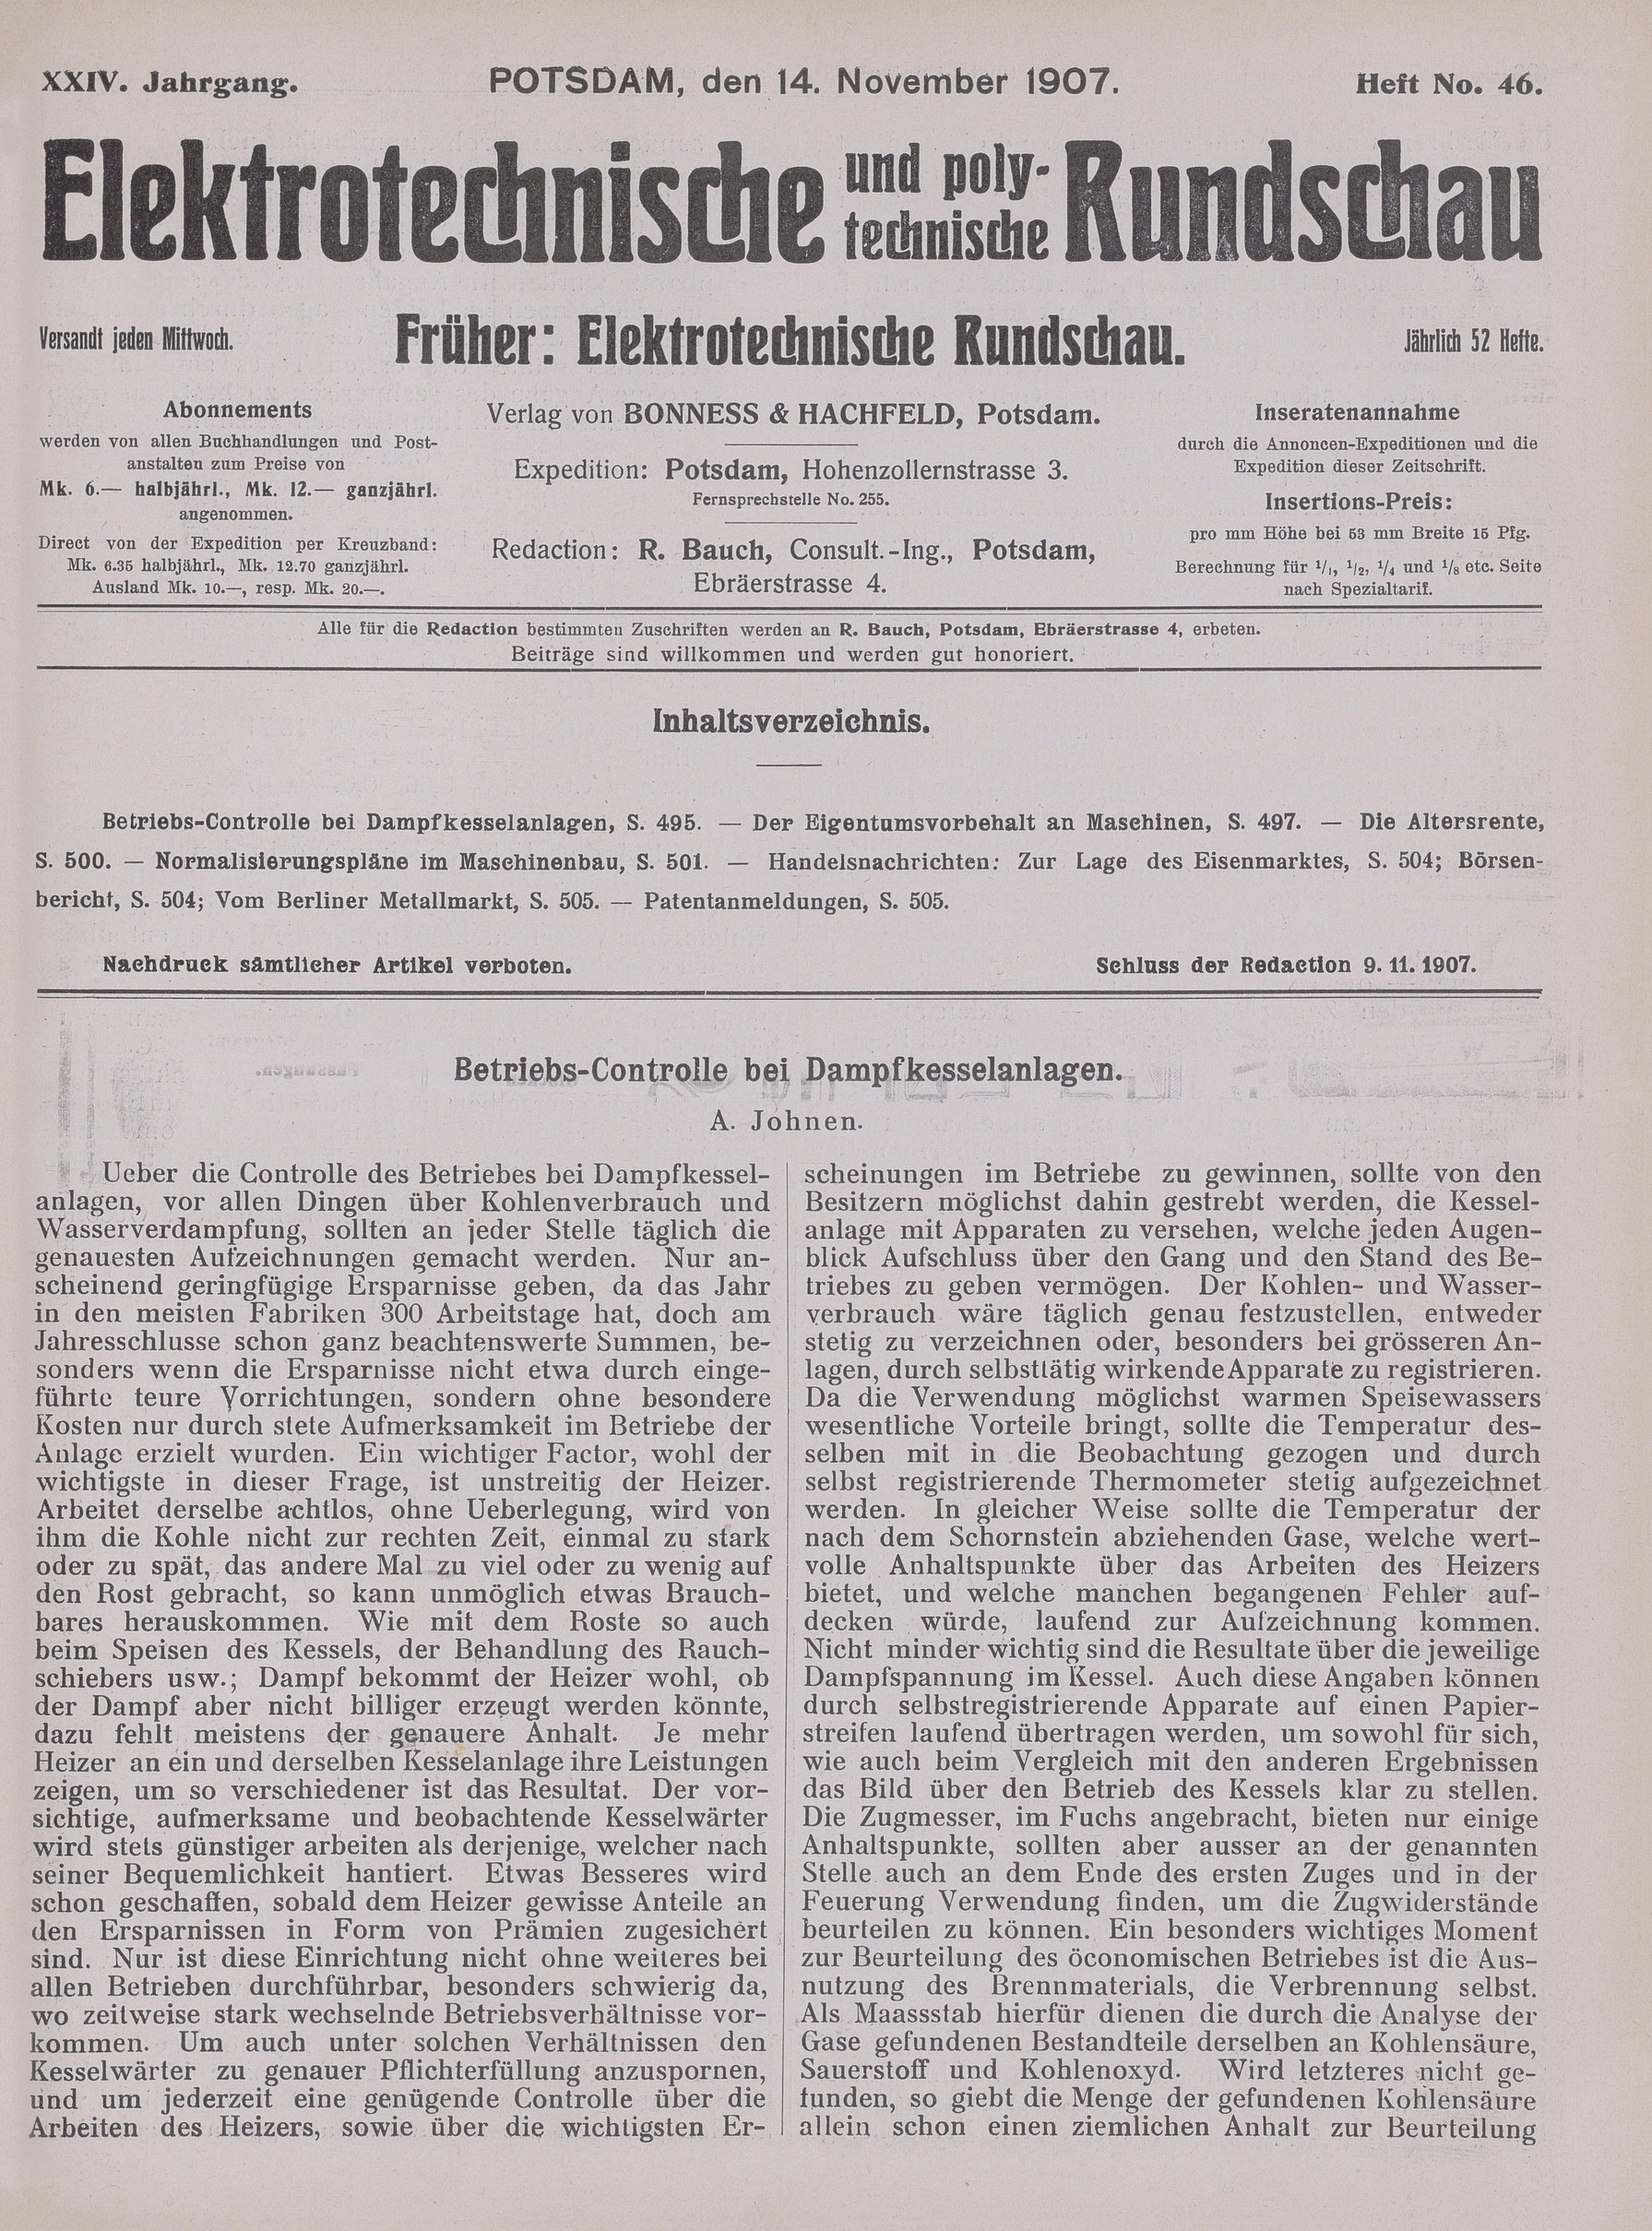 Elektrotechnische und polytechnische Rundschau, XXIV. Jahrgang, Heft No. 46